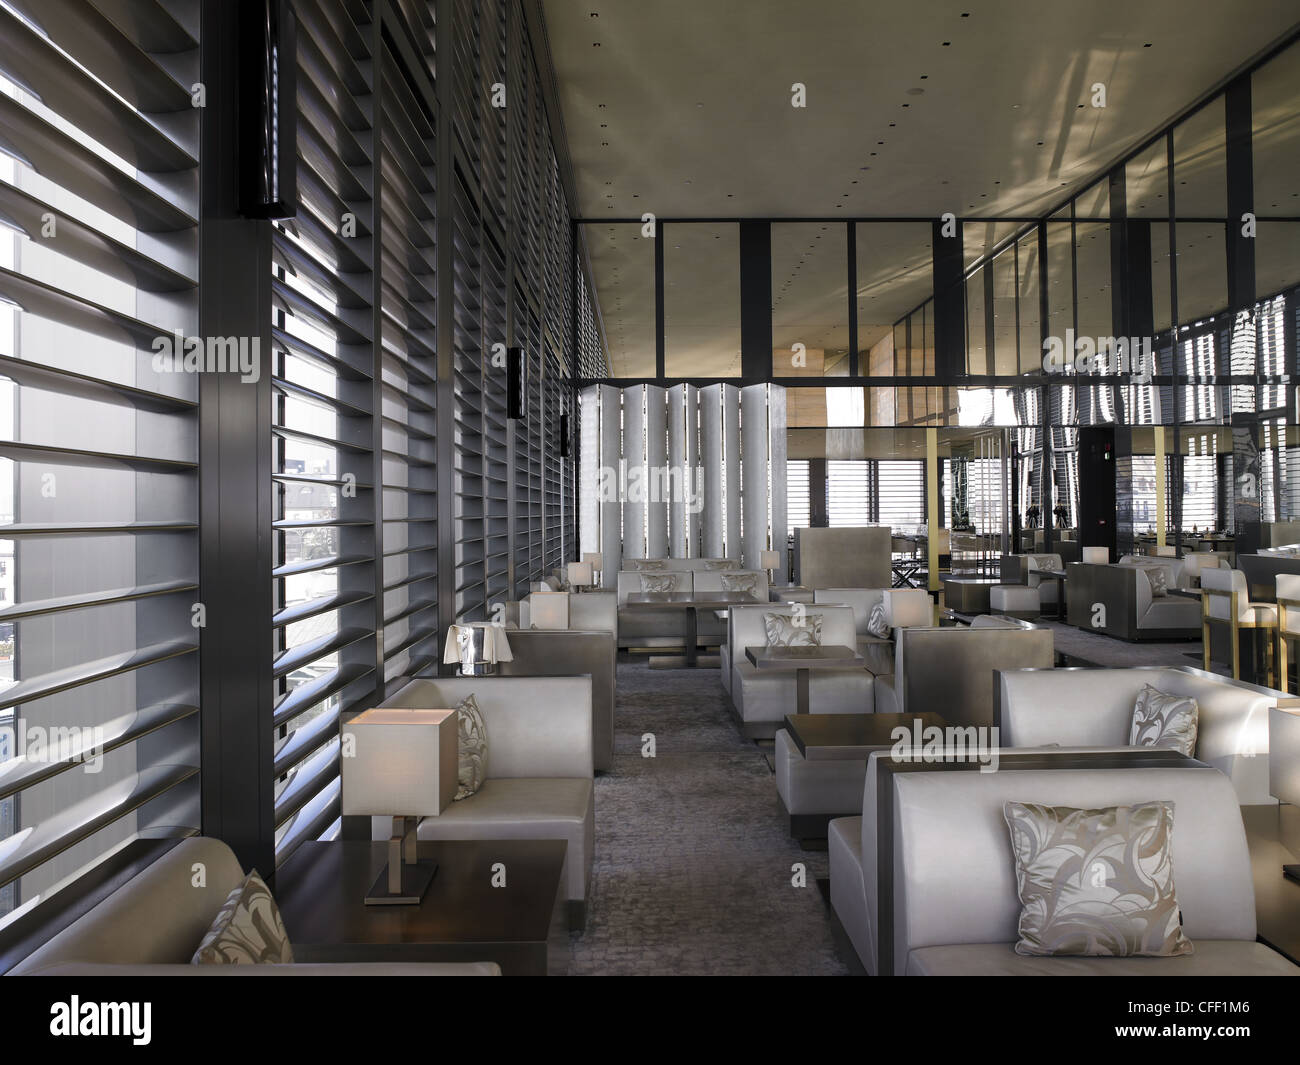 Armani Lounge Dubai | lupon.gov.ph